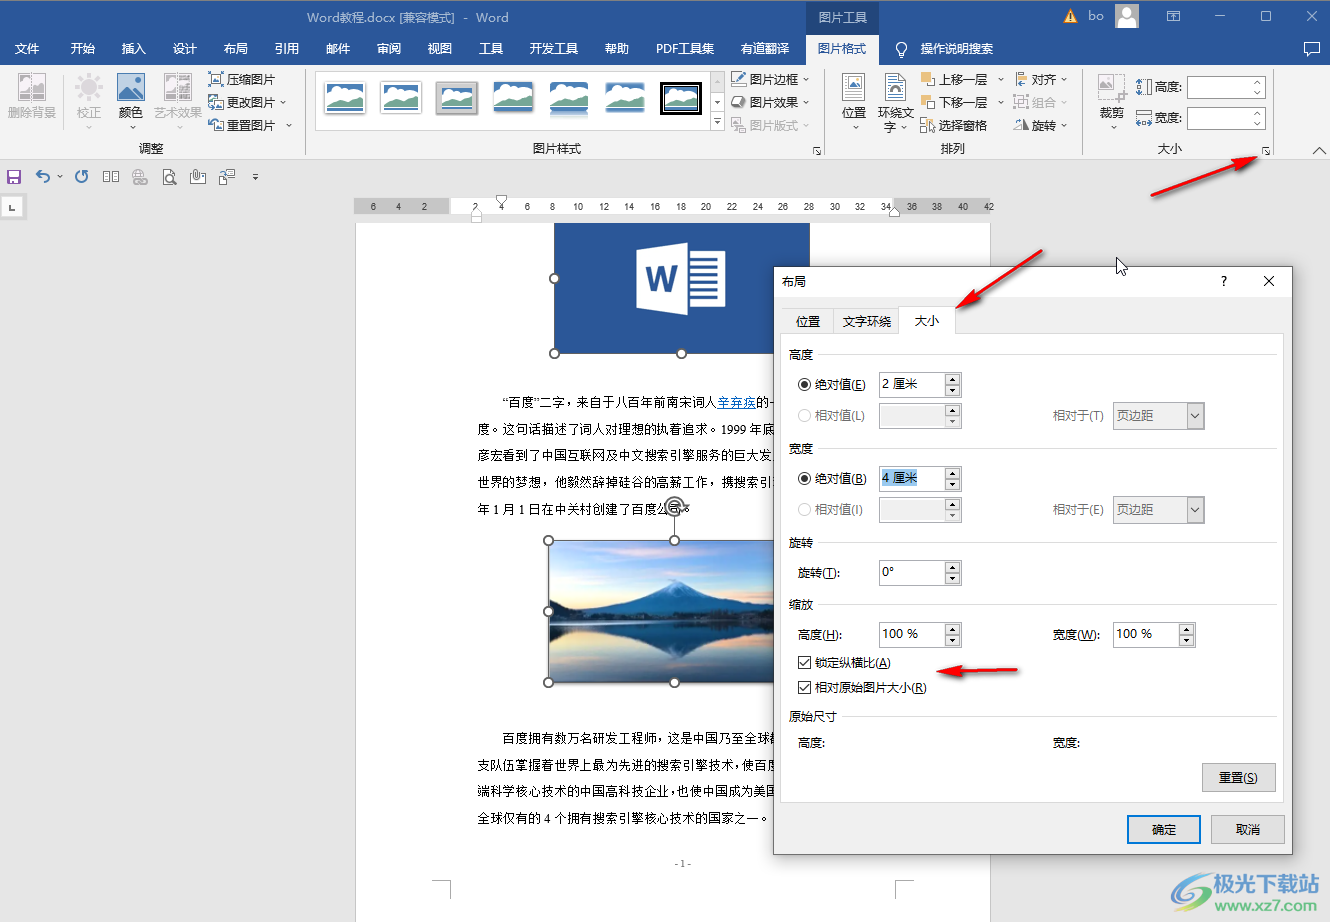 想知道怎么把word，PDF，和图片最后合并成一个PDF文档? - 知乎